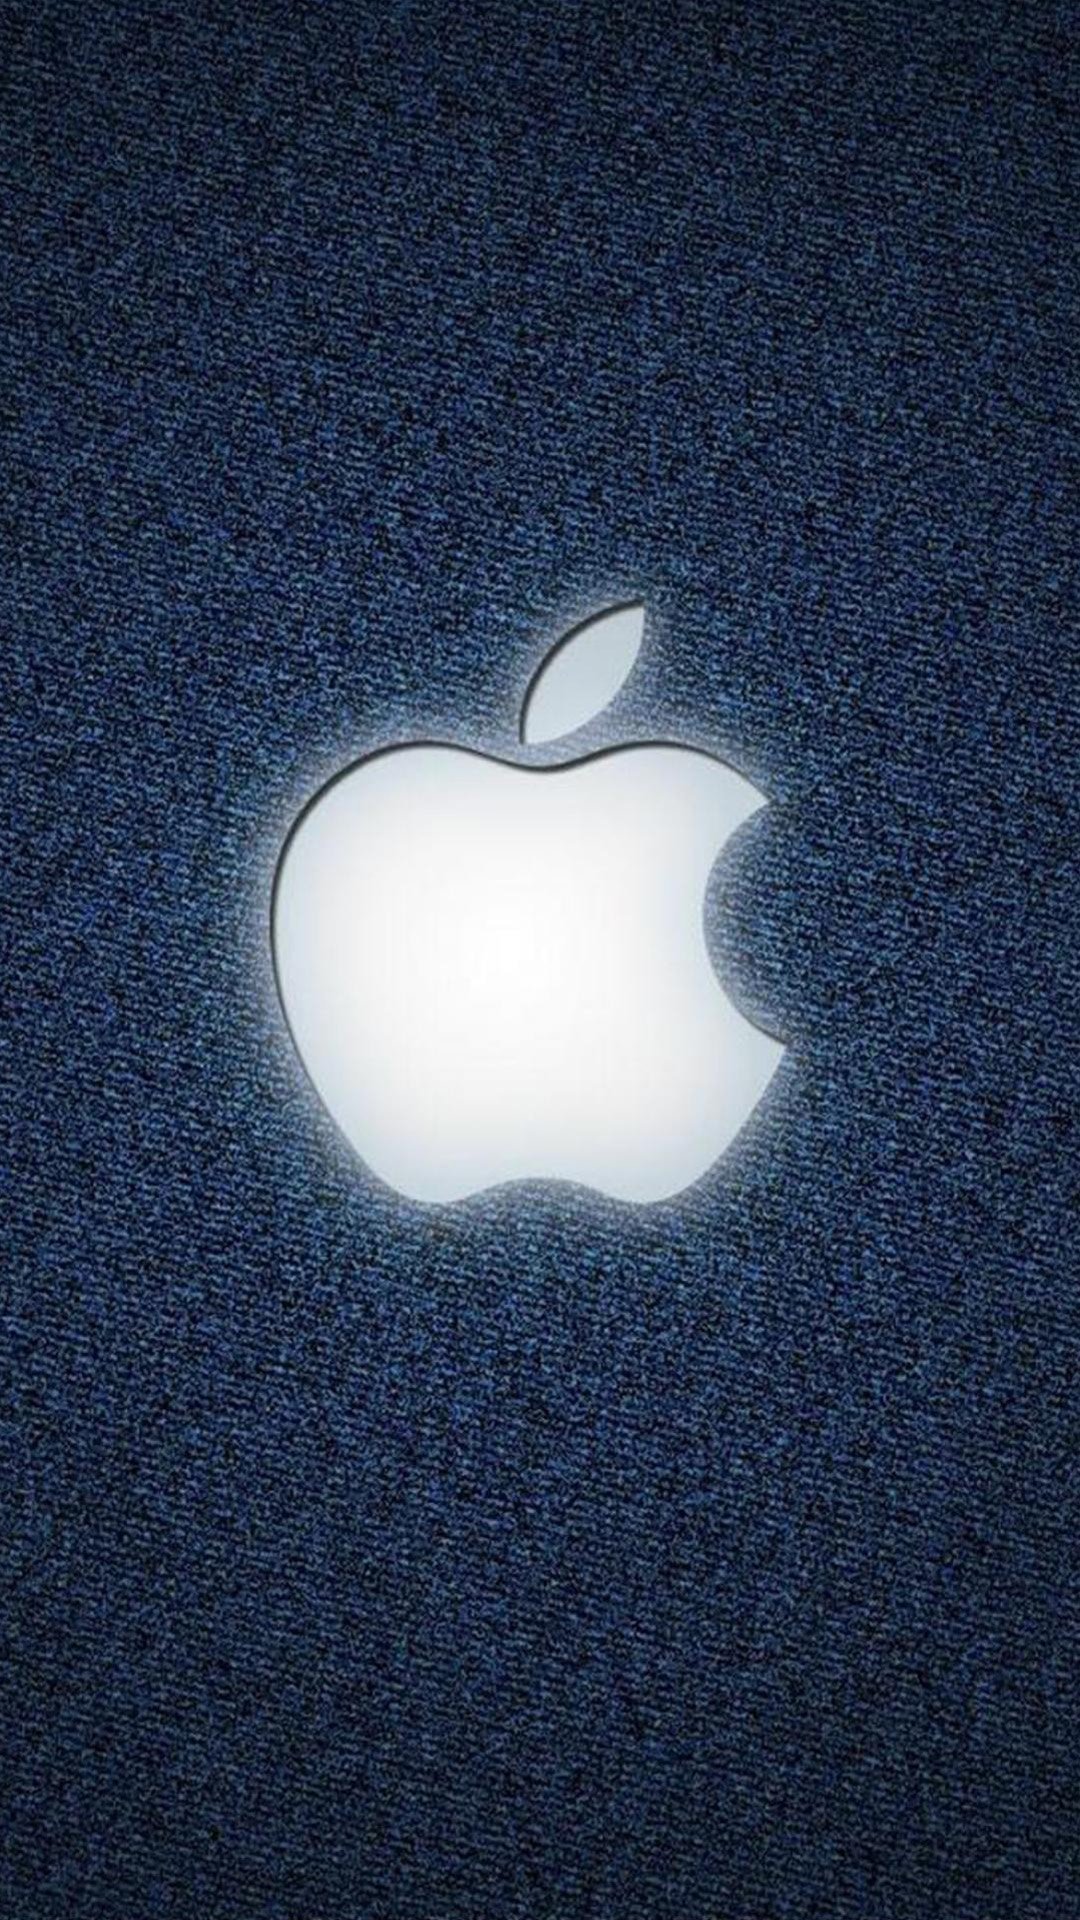 Найти картинку айфона. Логотип айфона. Яблоко Apple. Яблоко айфон. Изображение Apple.